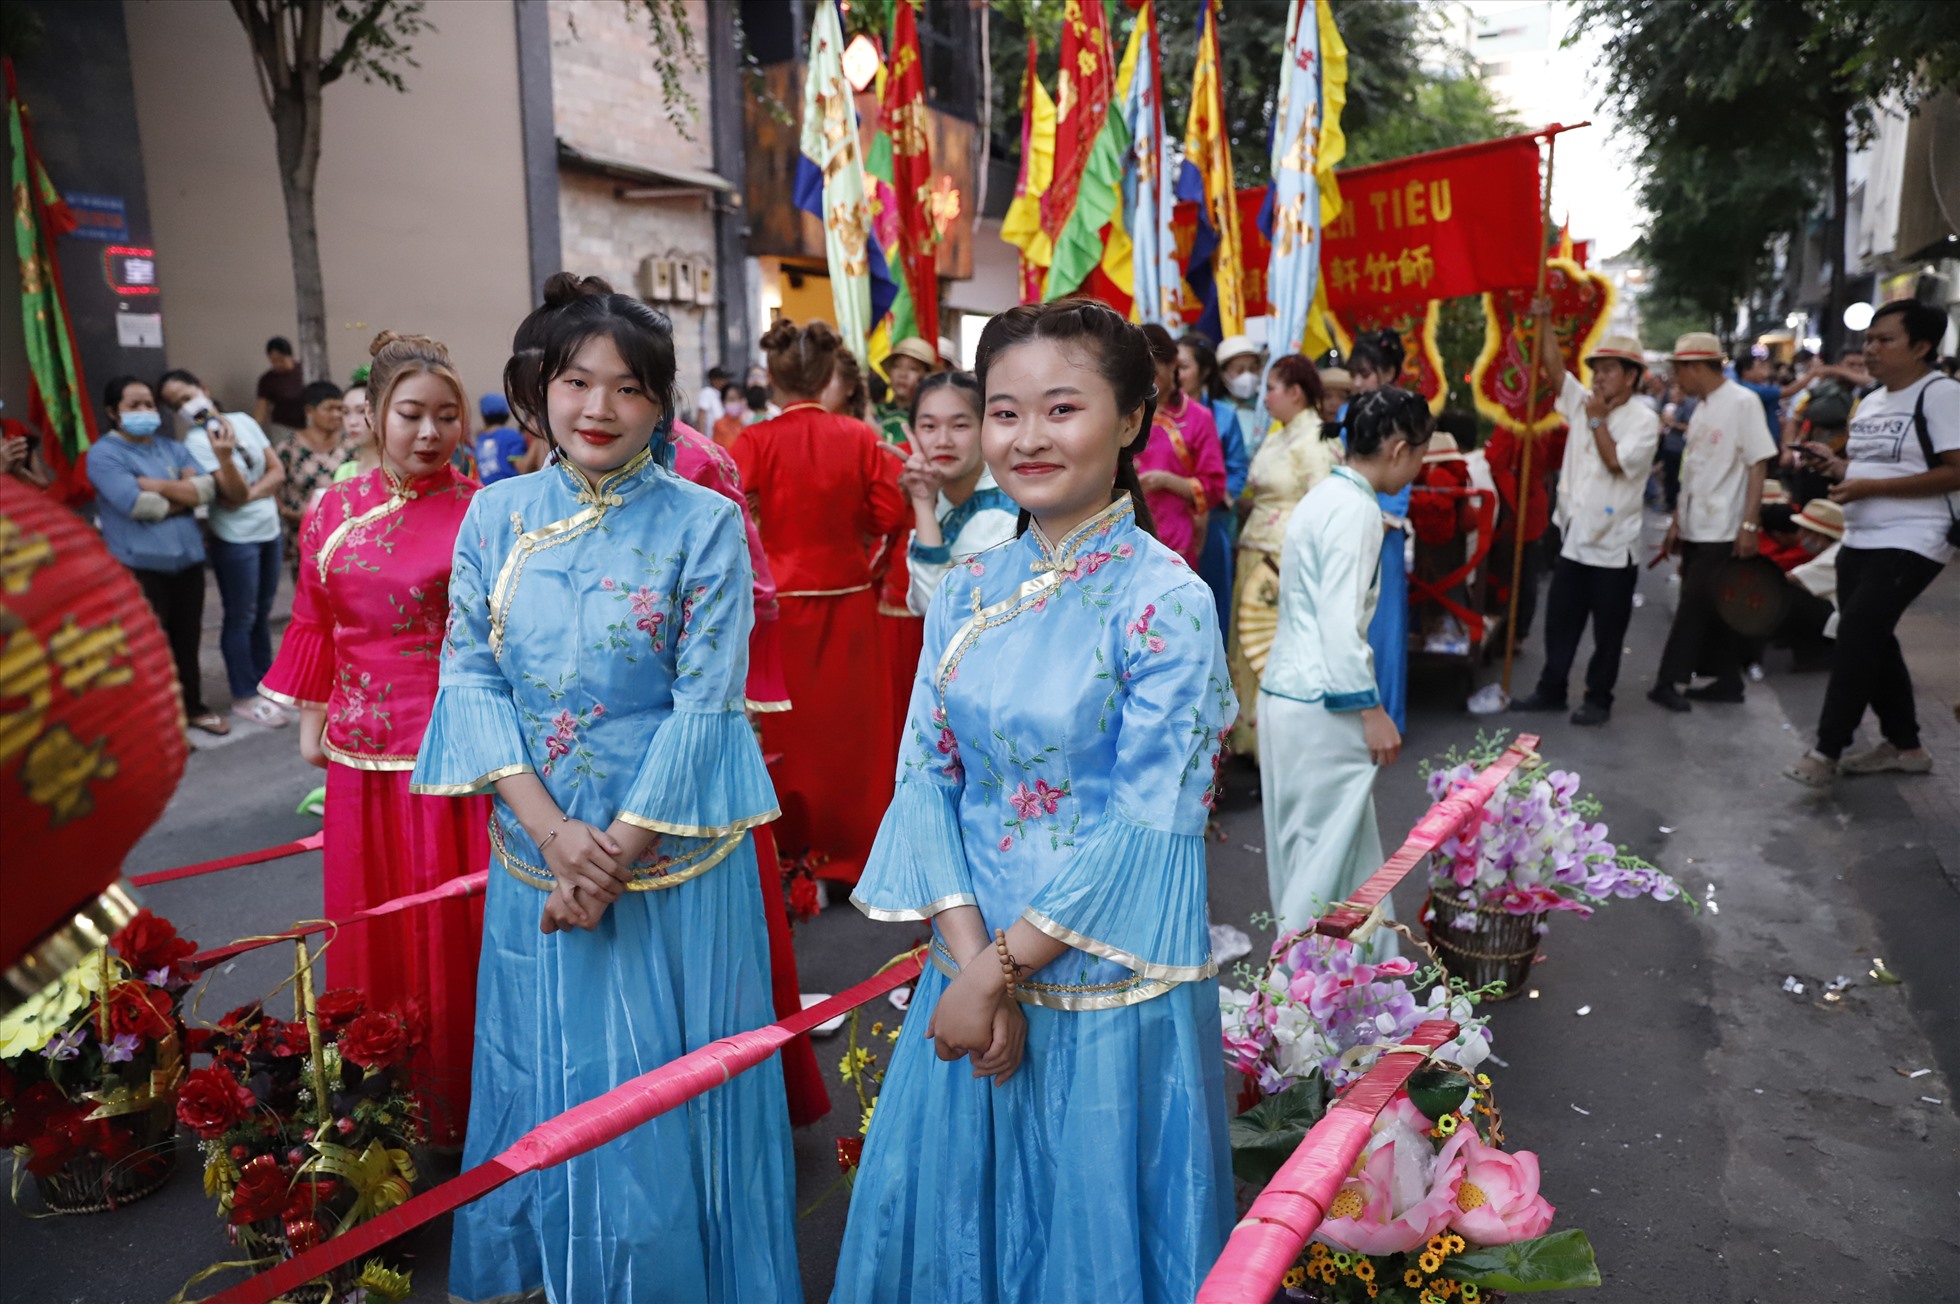 Hầu hết những người tham gia buổi diễu hành đều thuộc cộng đồng người Hoa tại quận 5 và quận 6.